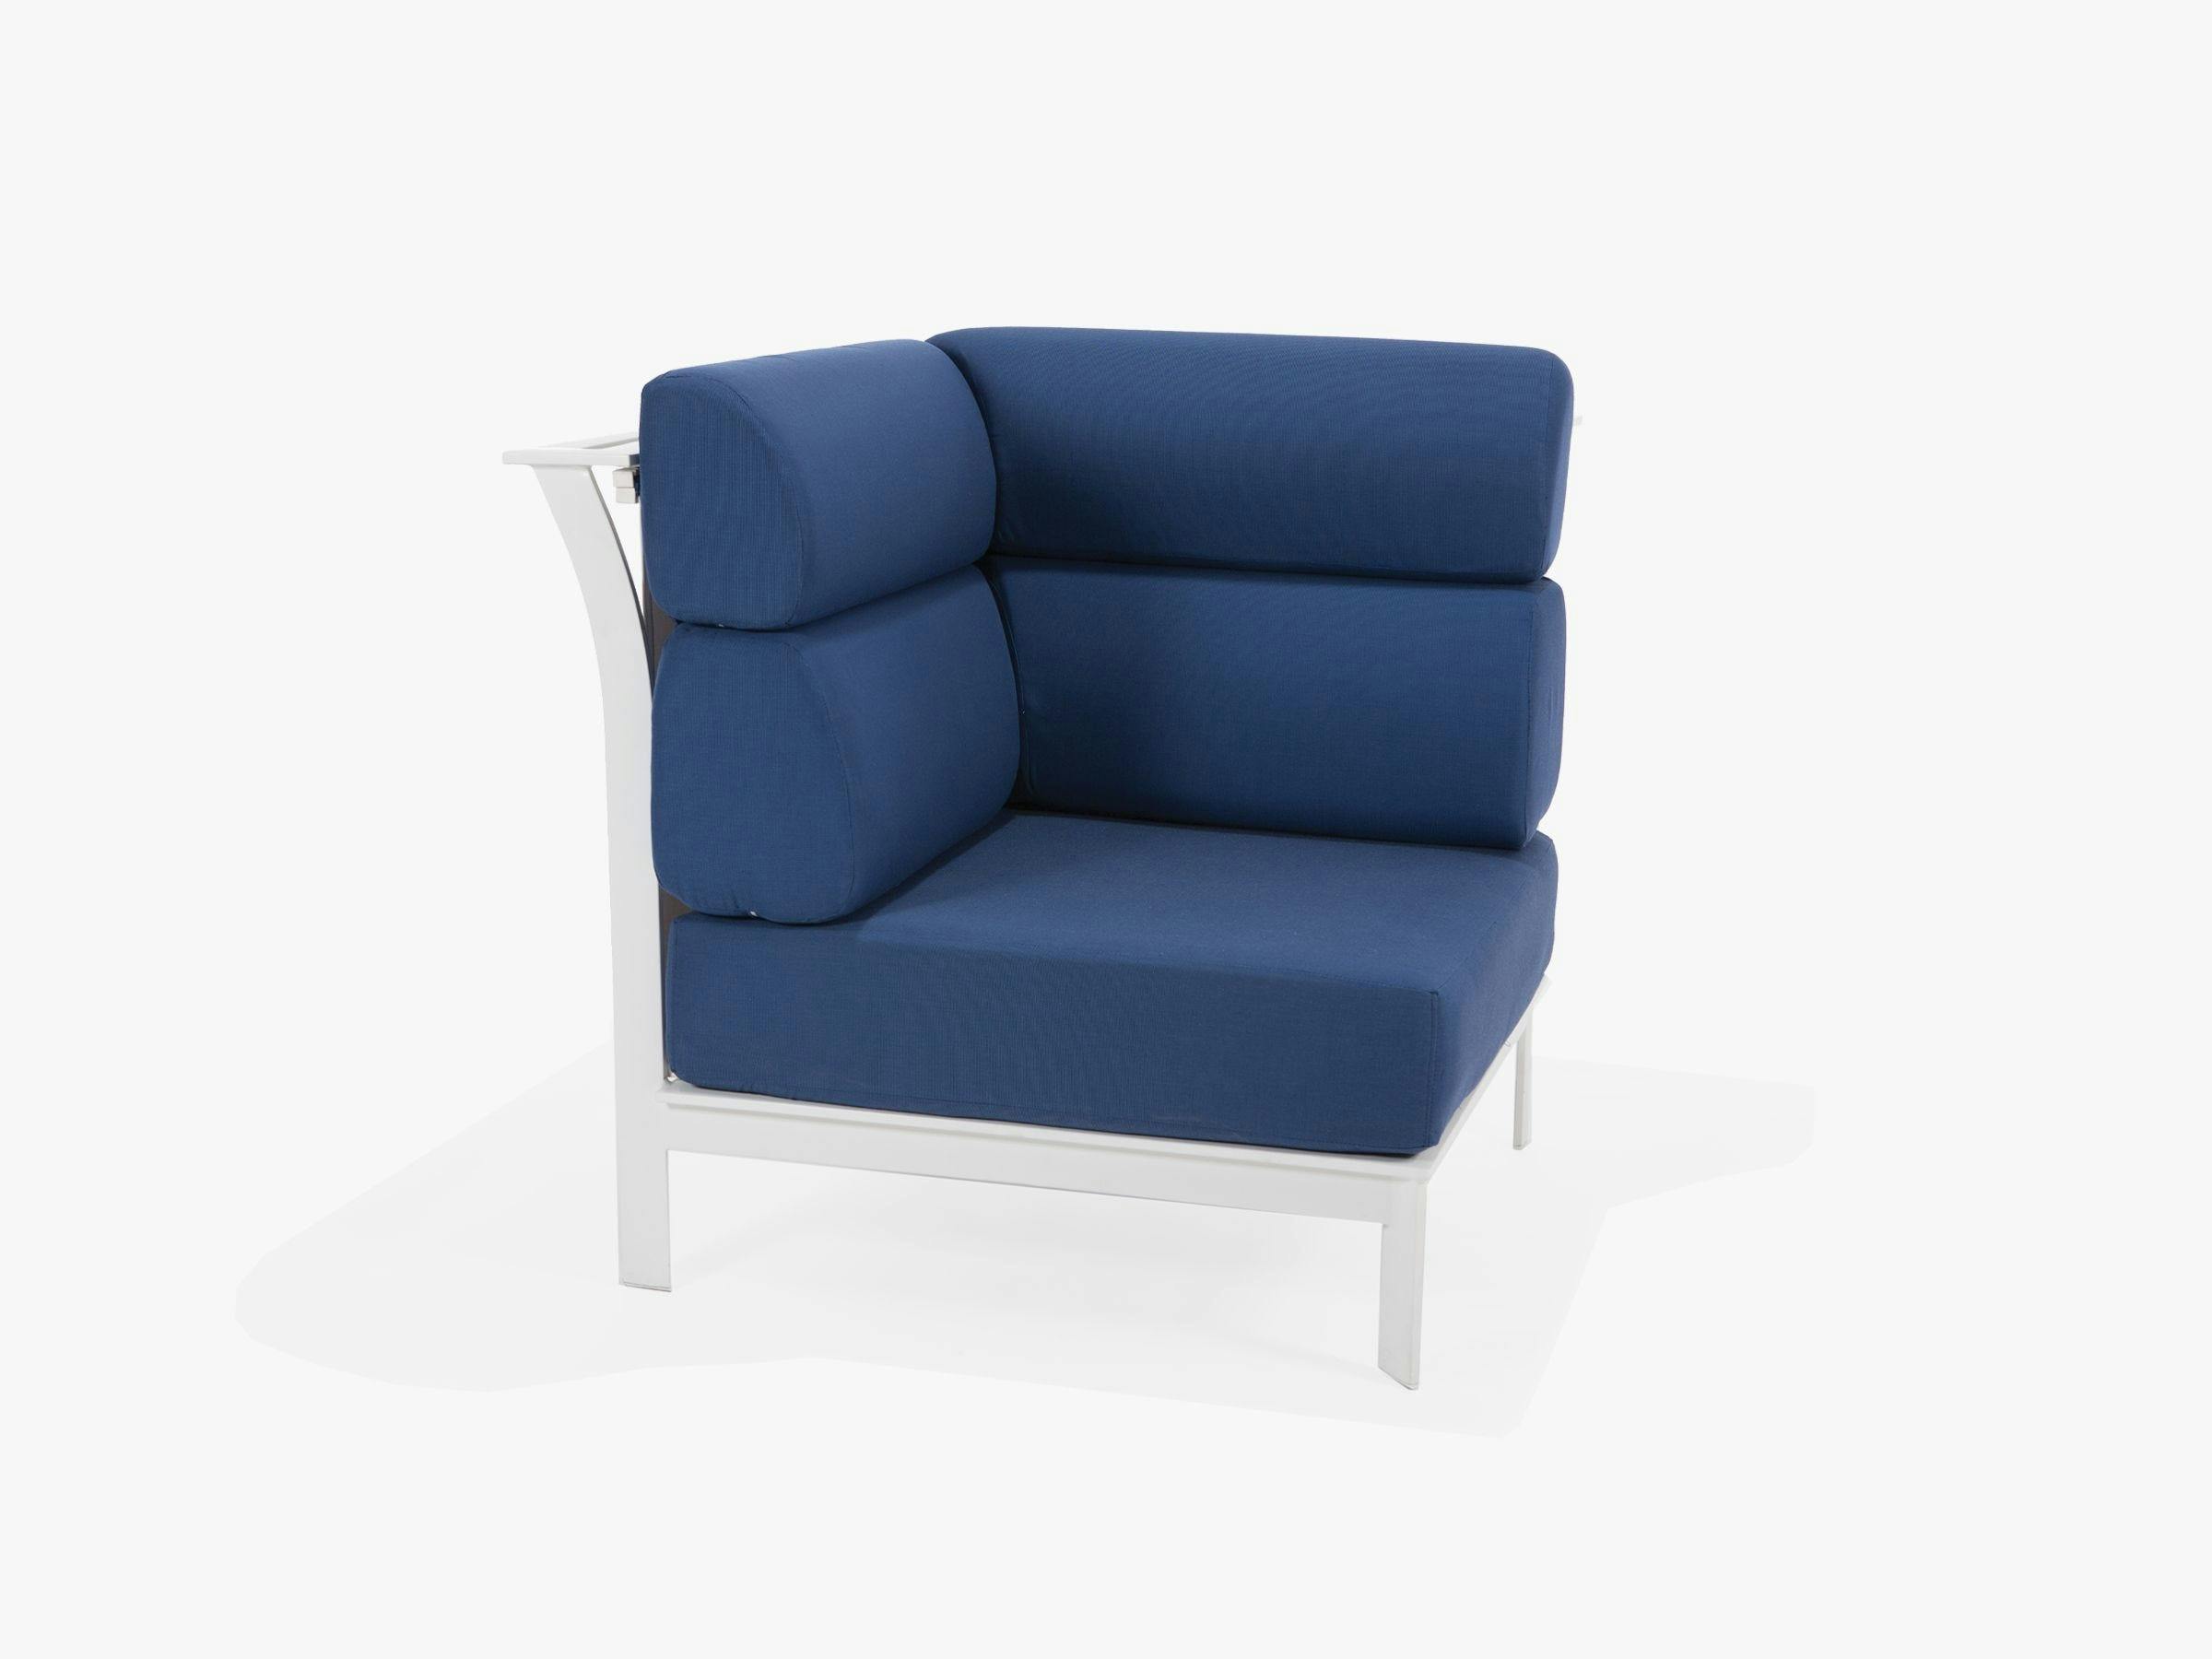 Edge Modular Cushion Square Corner Chair